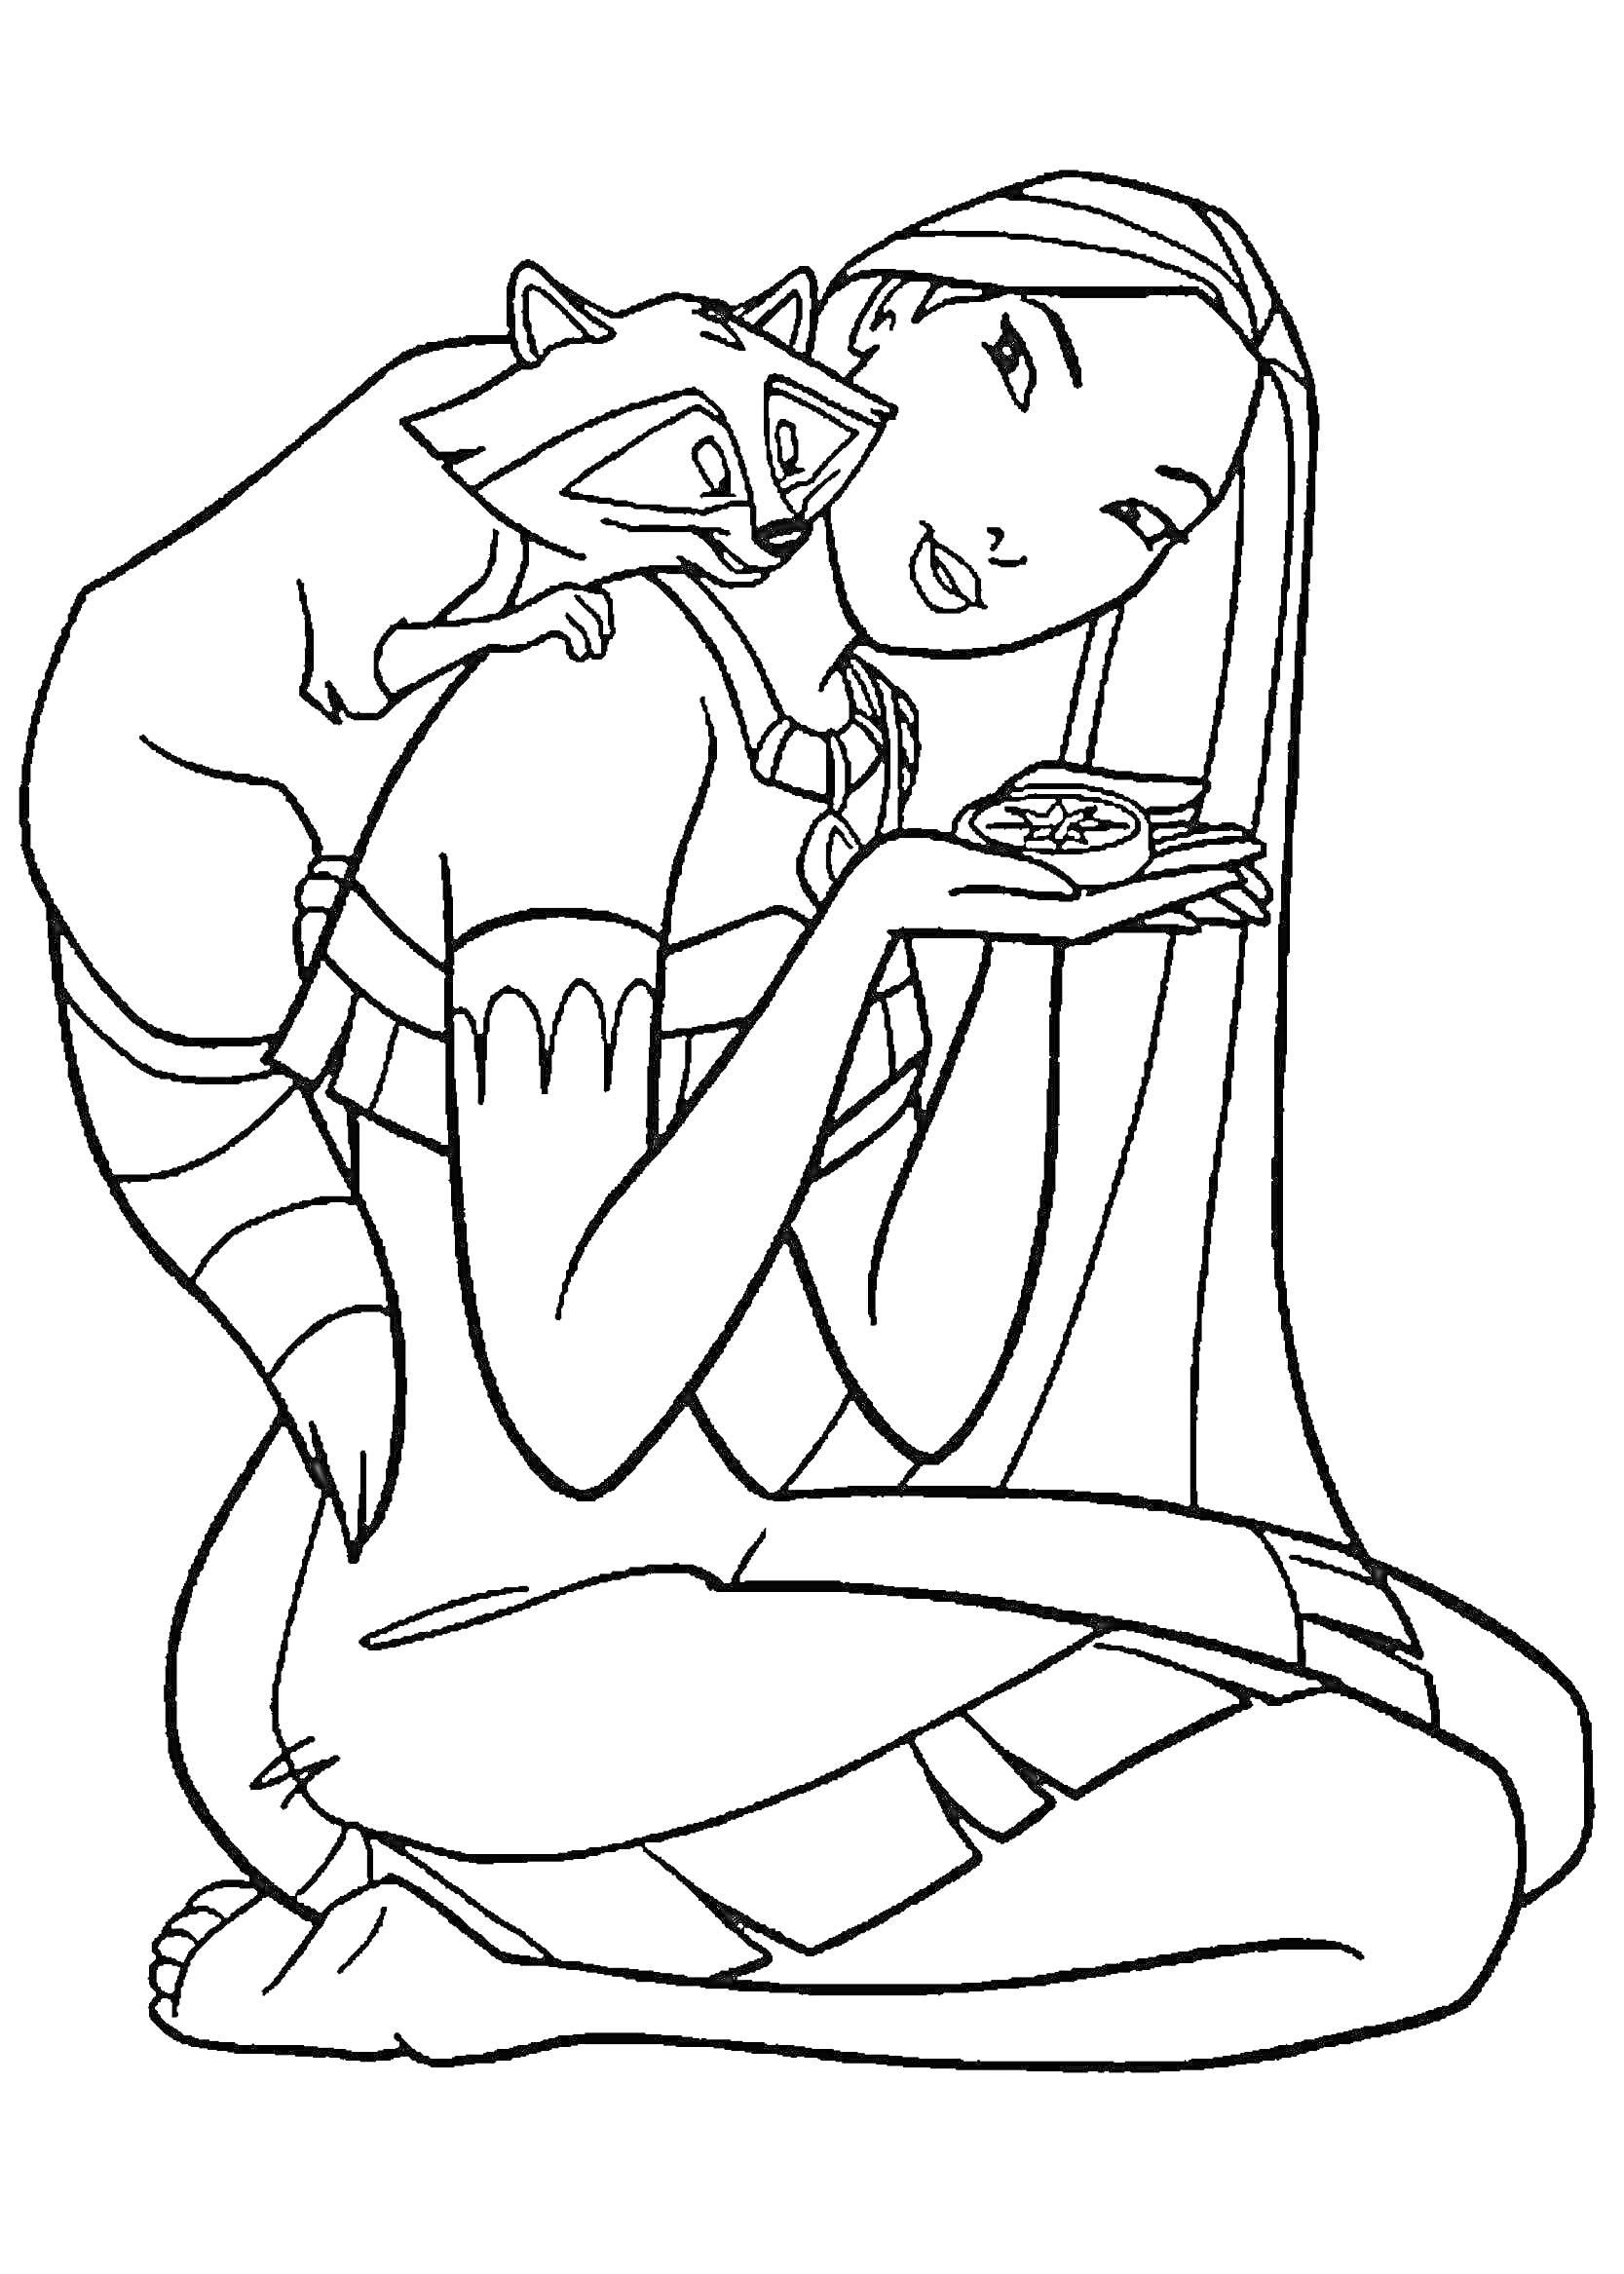 Девушка с длинными волосами и енот, держащий в руках изящный предмет